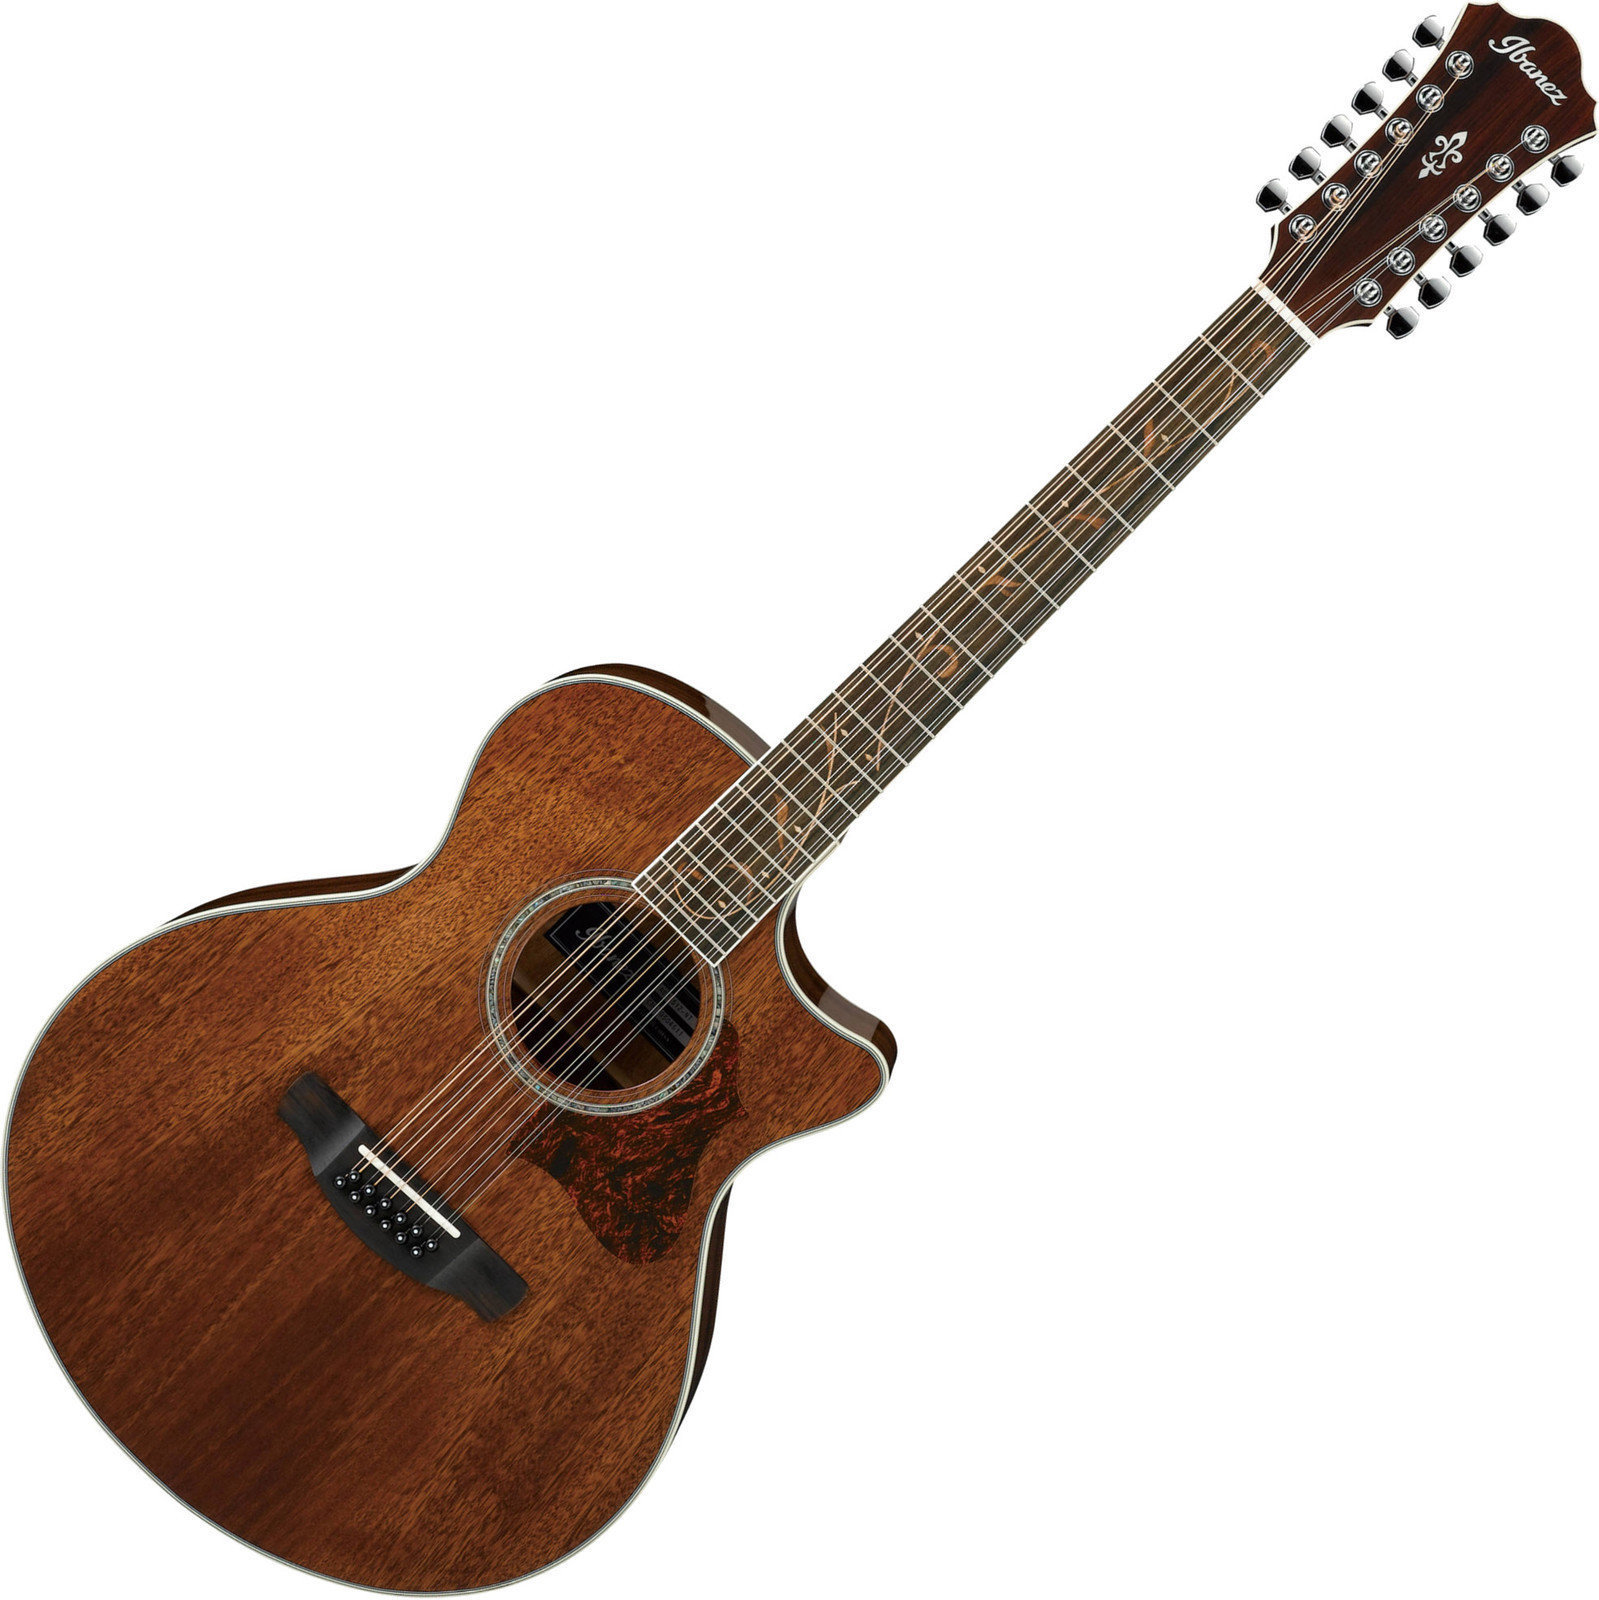 Guitarra eletroacústica de 12 cordas Ibanez AE2412 Natural High Gloss